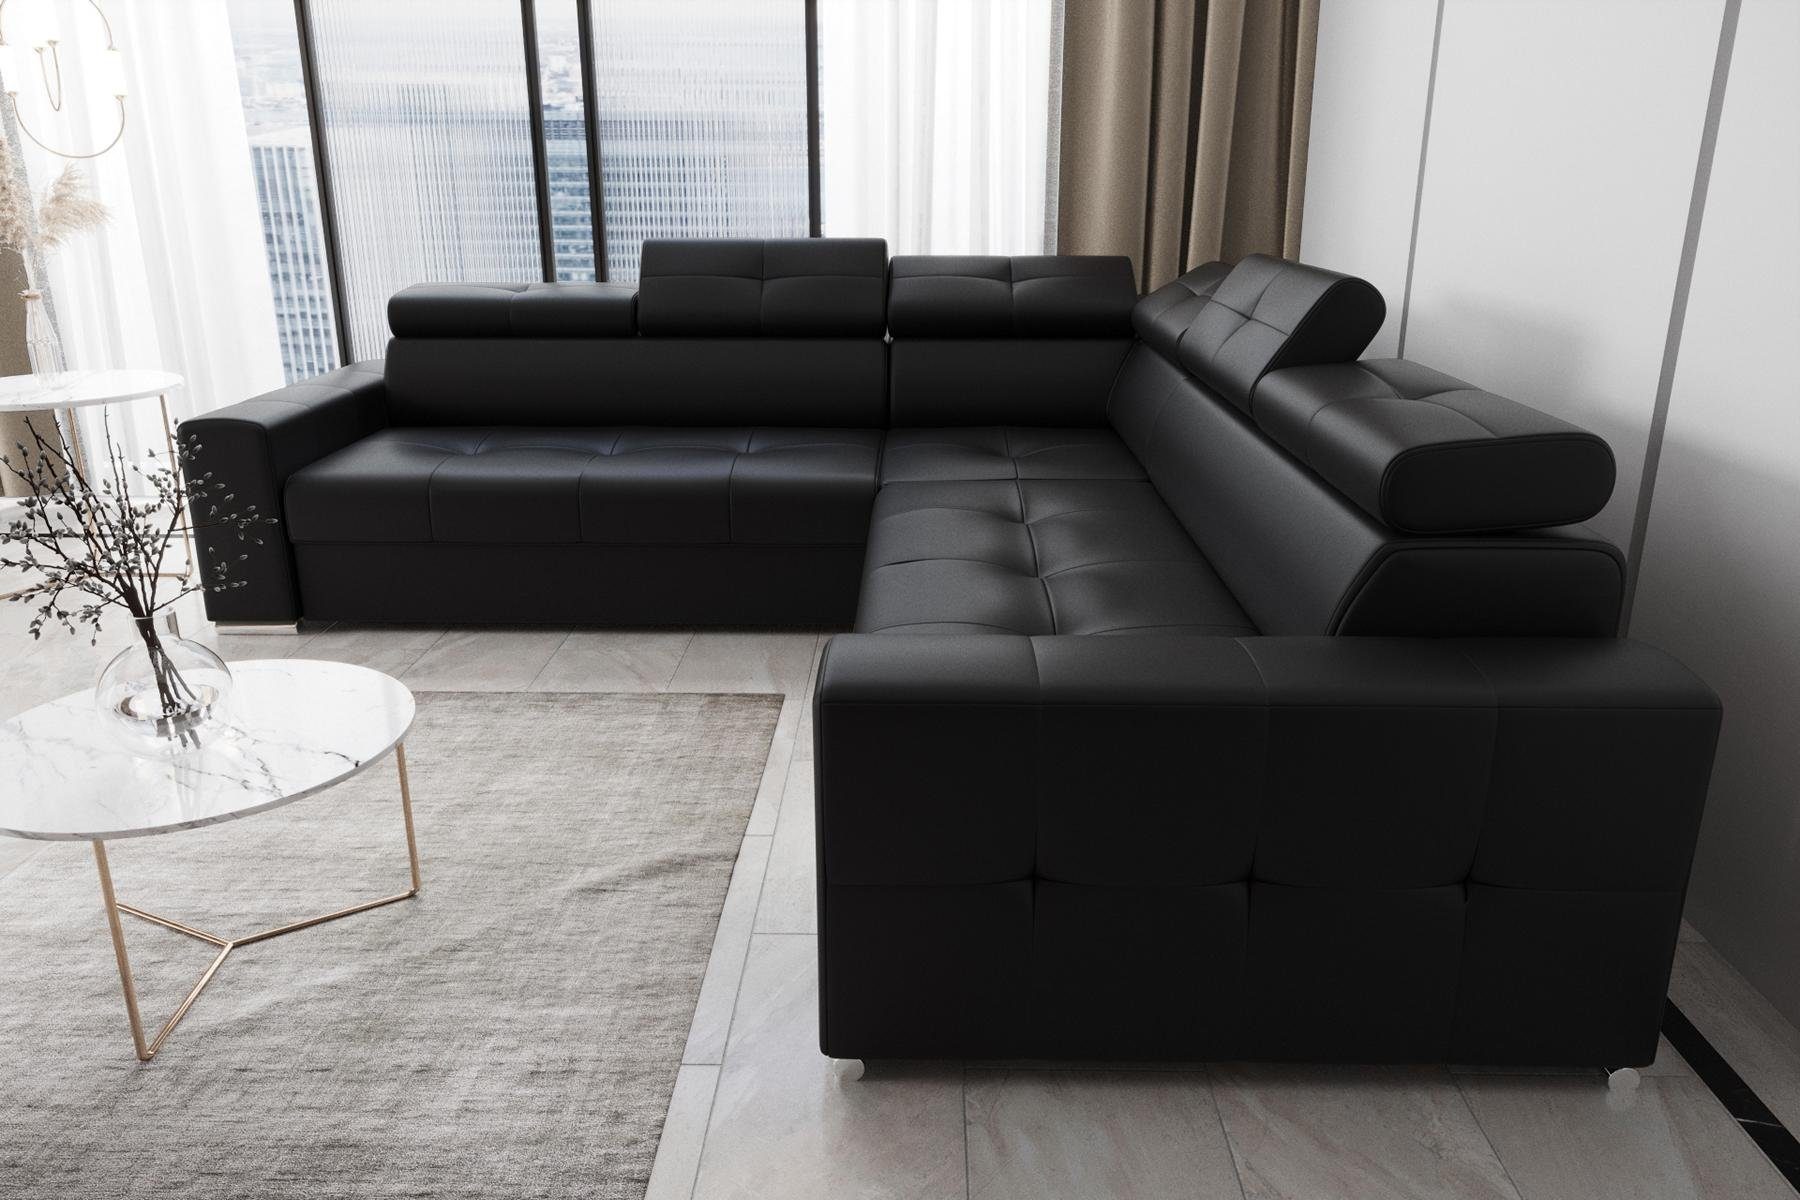 JVmoebel Ecksofa Wohnzimmer Textil Leder Luxus L Form Modern Ecksofa Couch, Made in Europe Schwarz